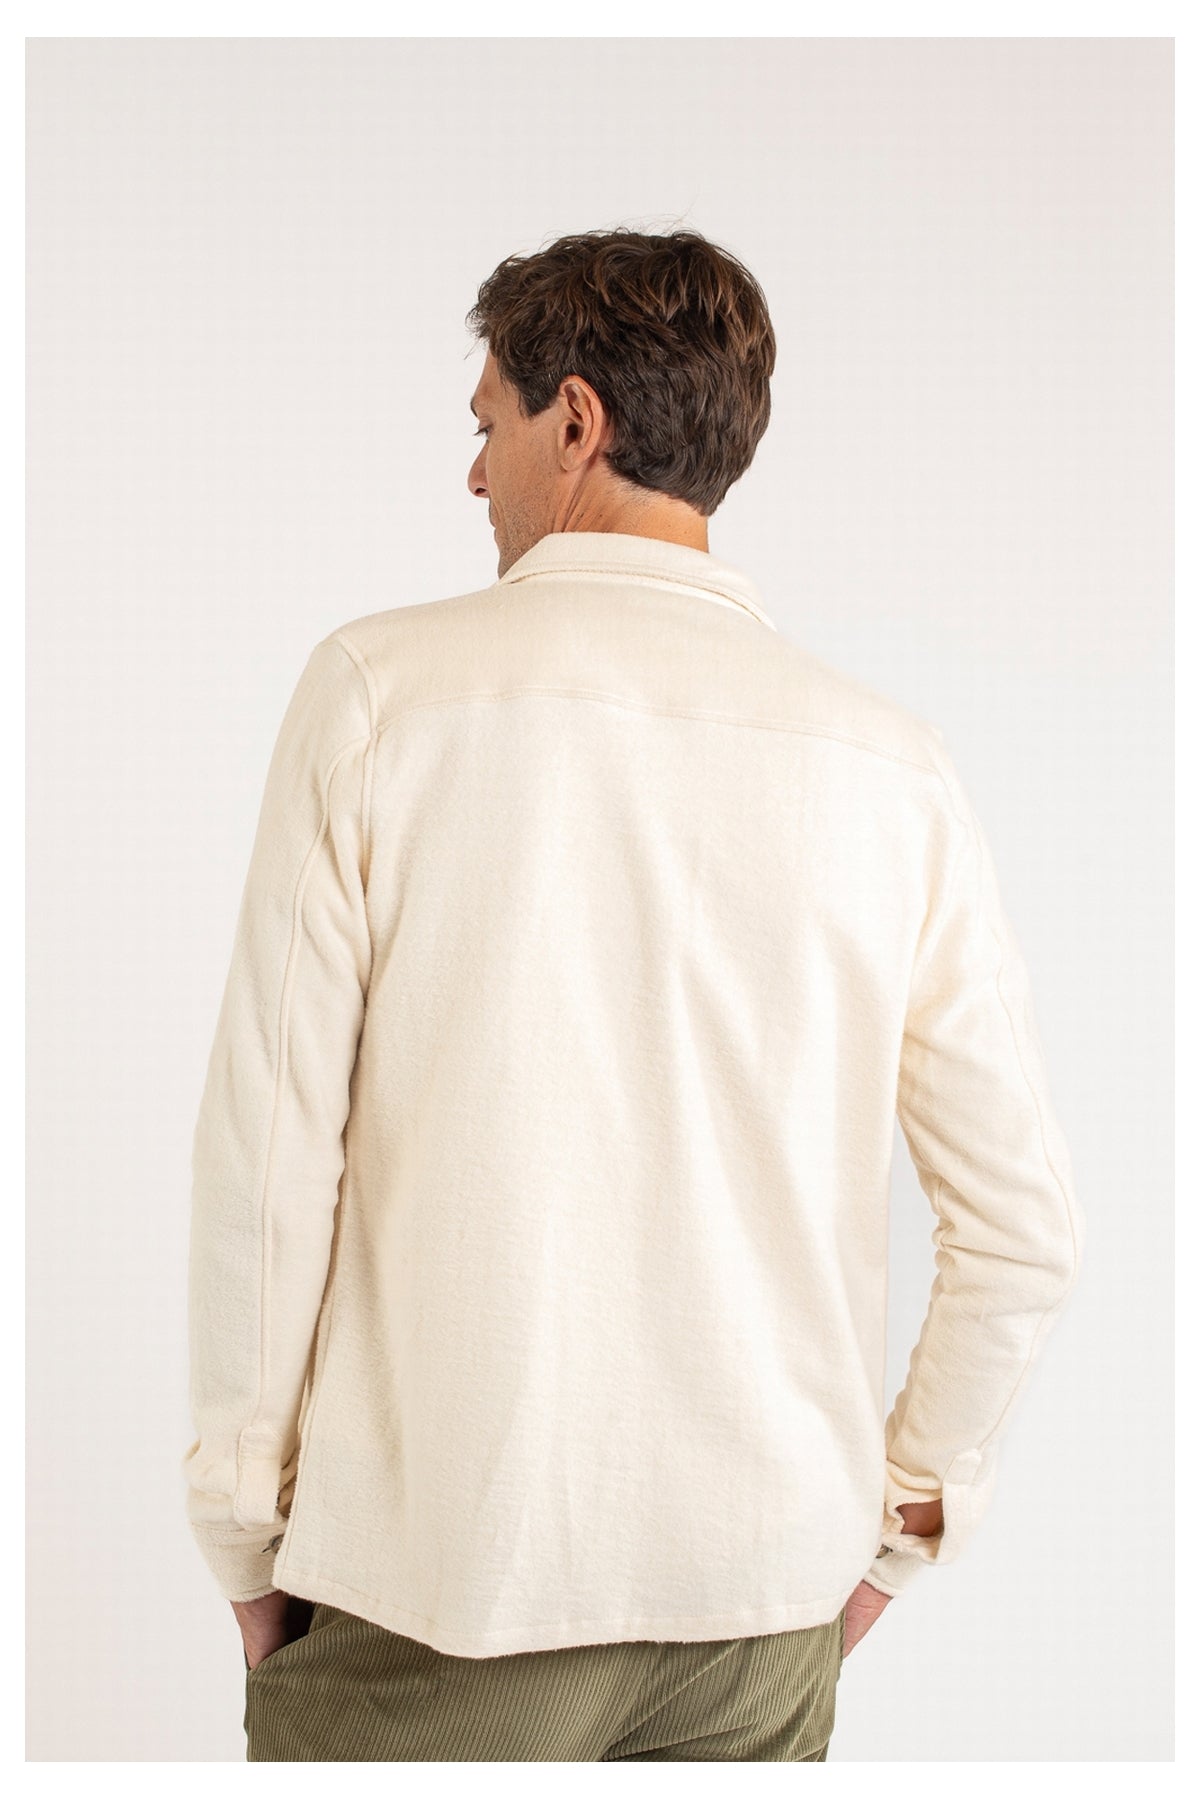 Gian Polarfleece Overshirt Vintage White